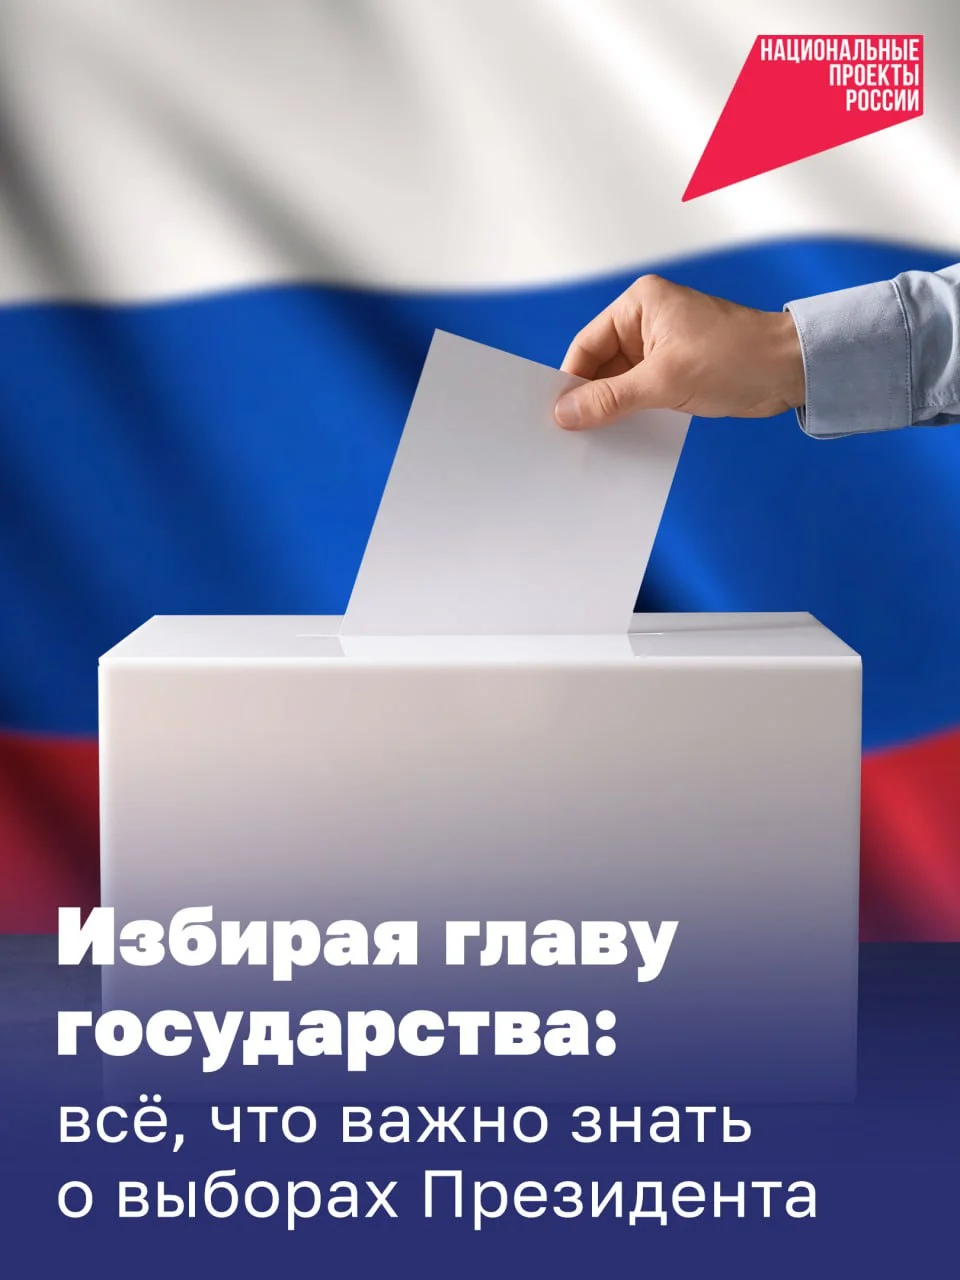 Выборы Президента России состоятся уже на этой неделе! 